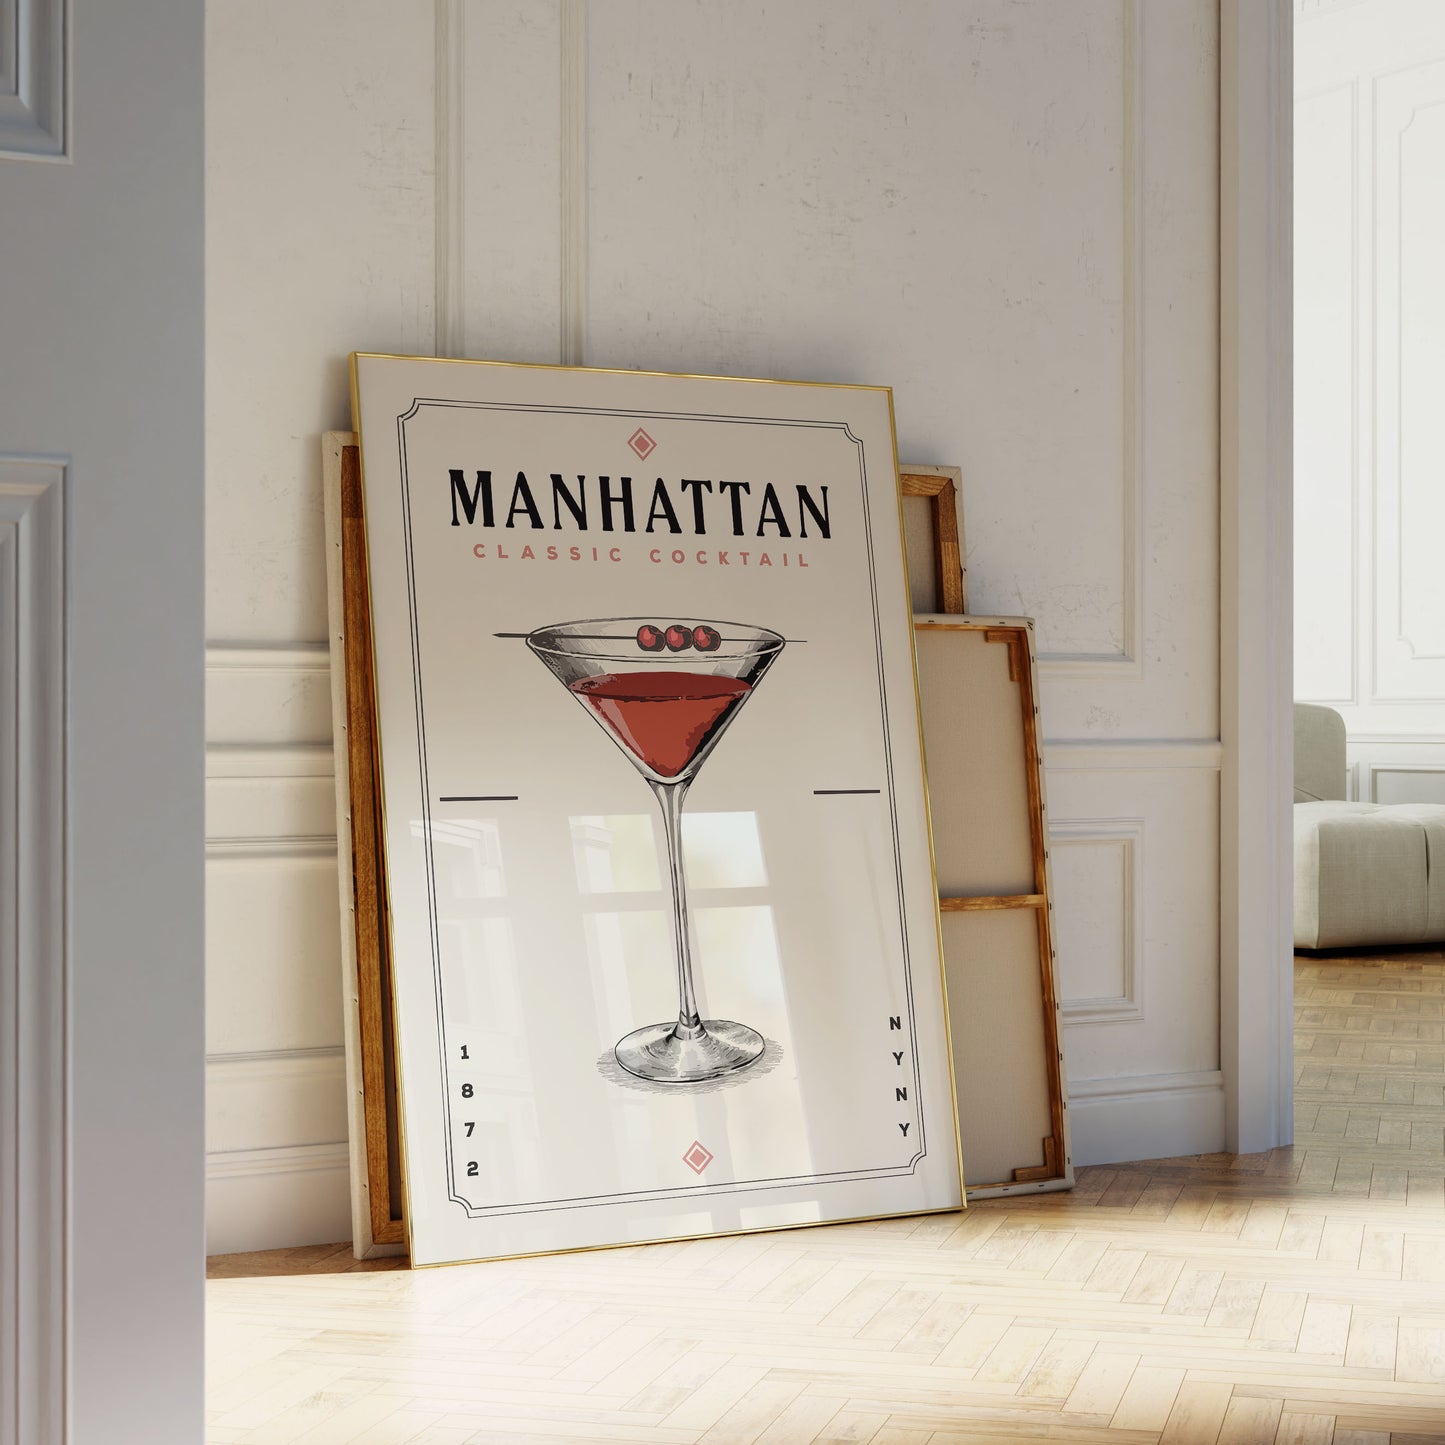 Manhattan - Minimalist Cocktail Poster